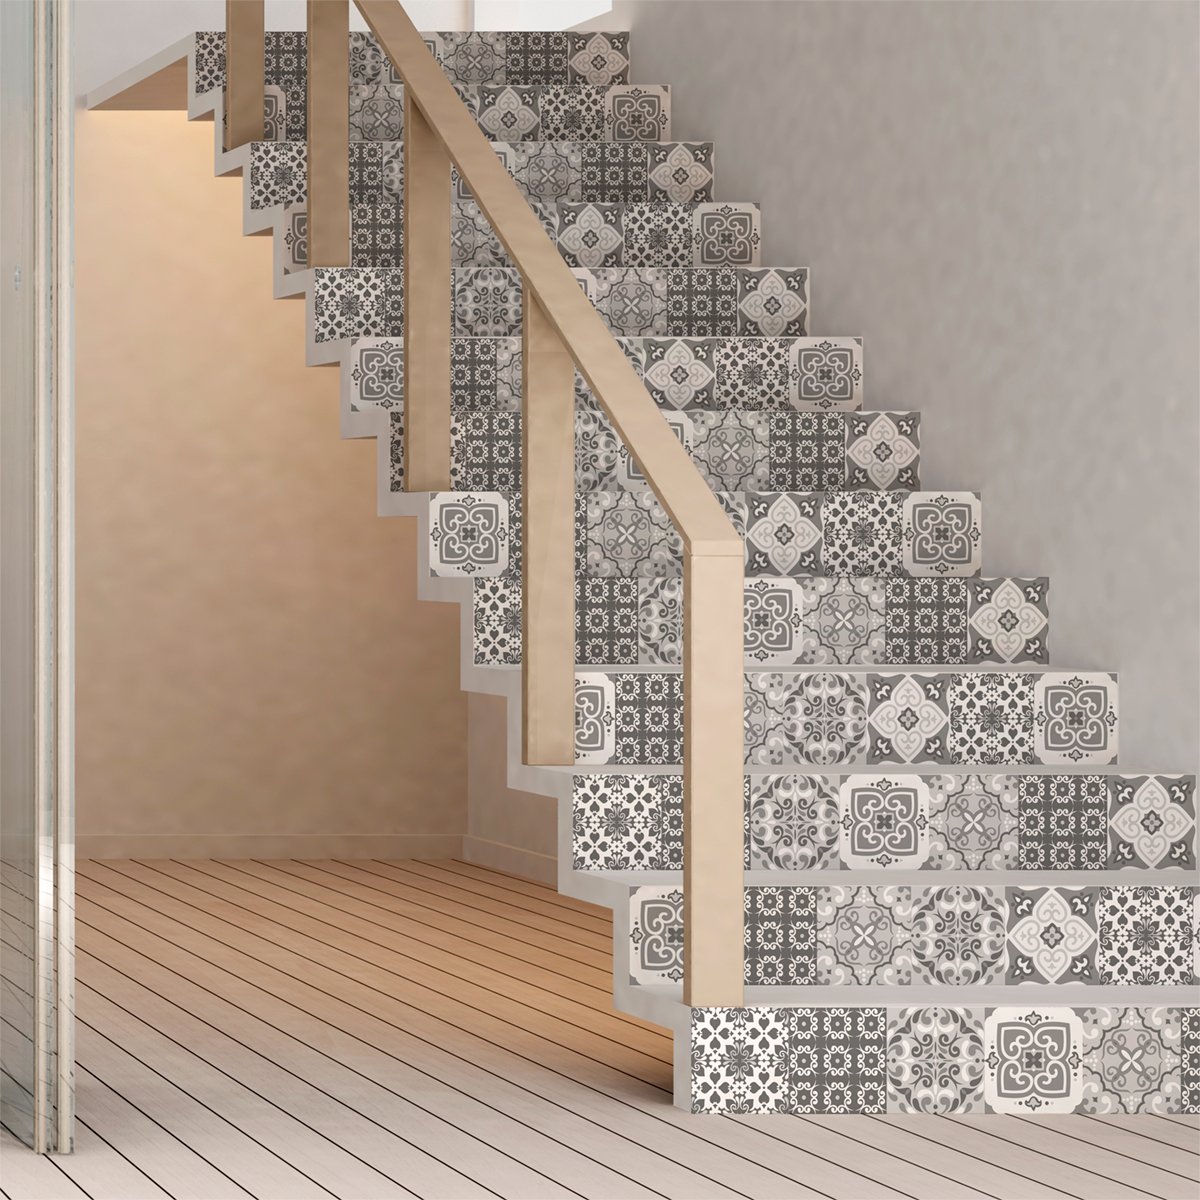 Selbstklebende Treppe Fliesen | Aufkleber für Zement Fliesen – Aufkleber für Kontrosenfliesen | Treppe Zementfliesen selbstklebend - azulejos - 15 x 105 cm - 6 Streifen